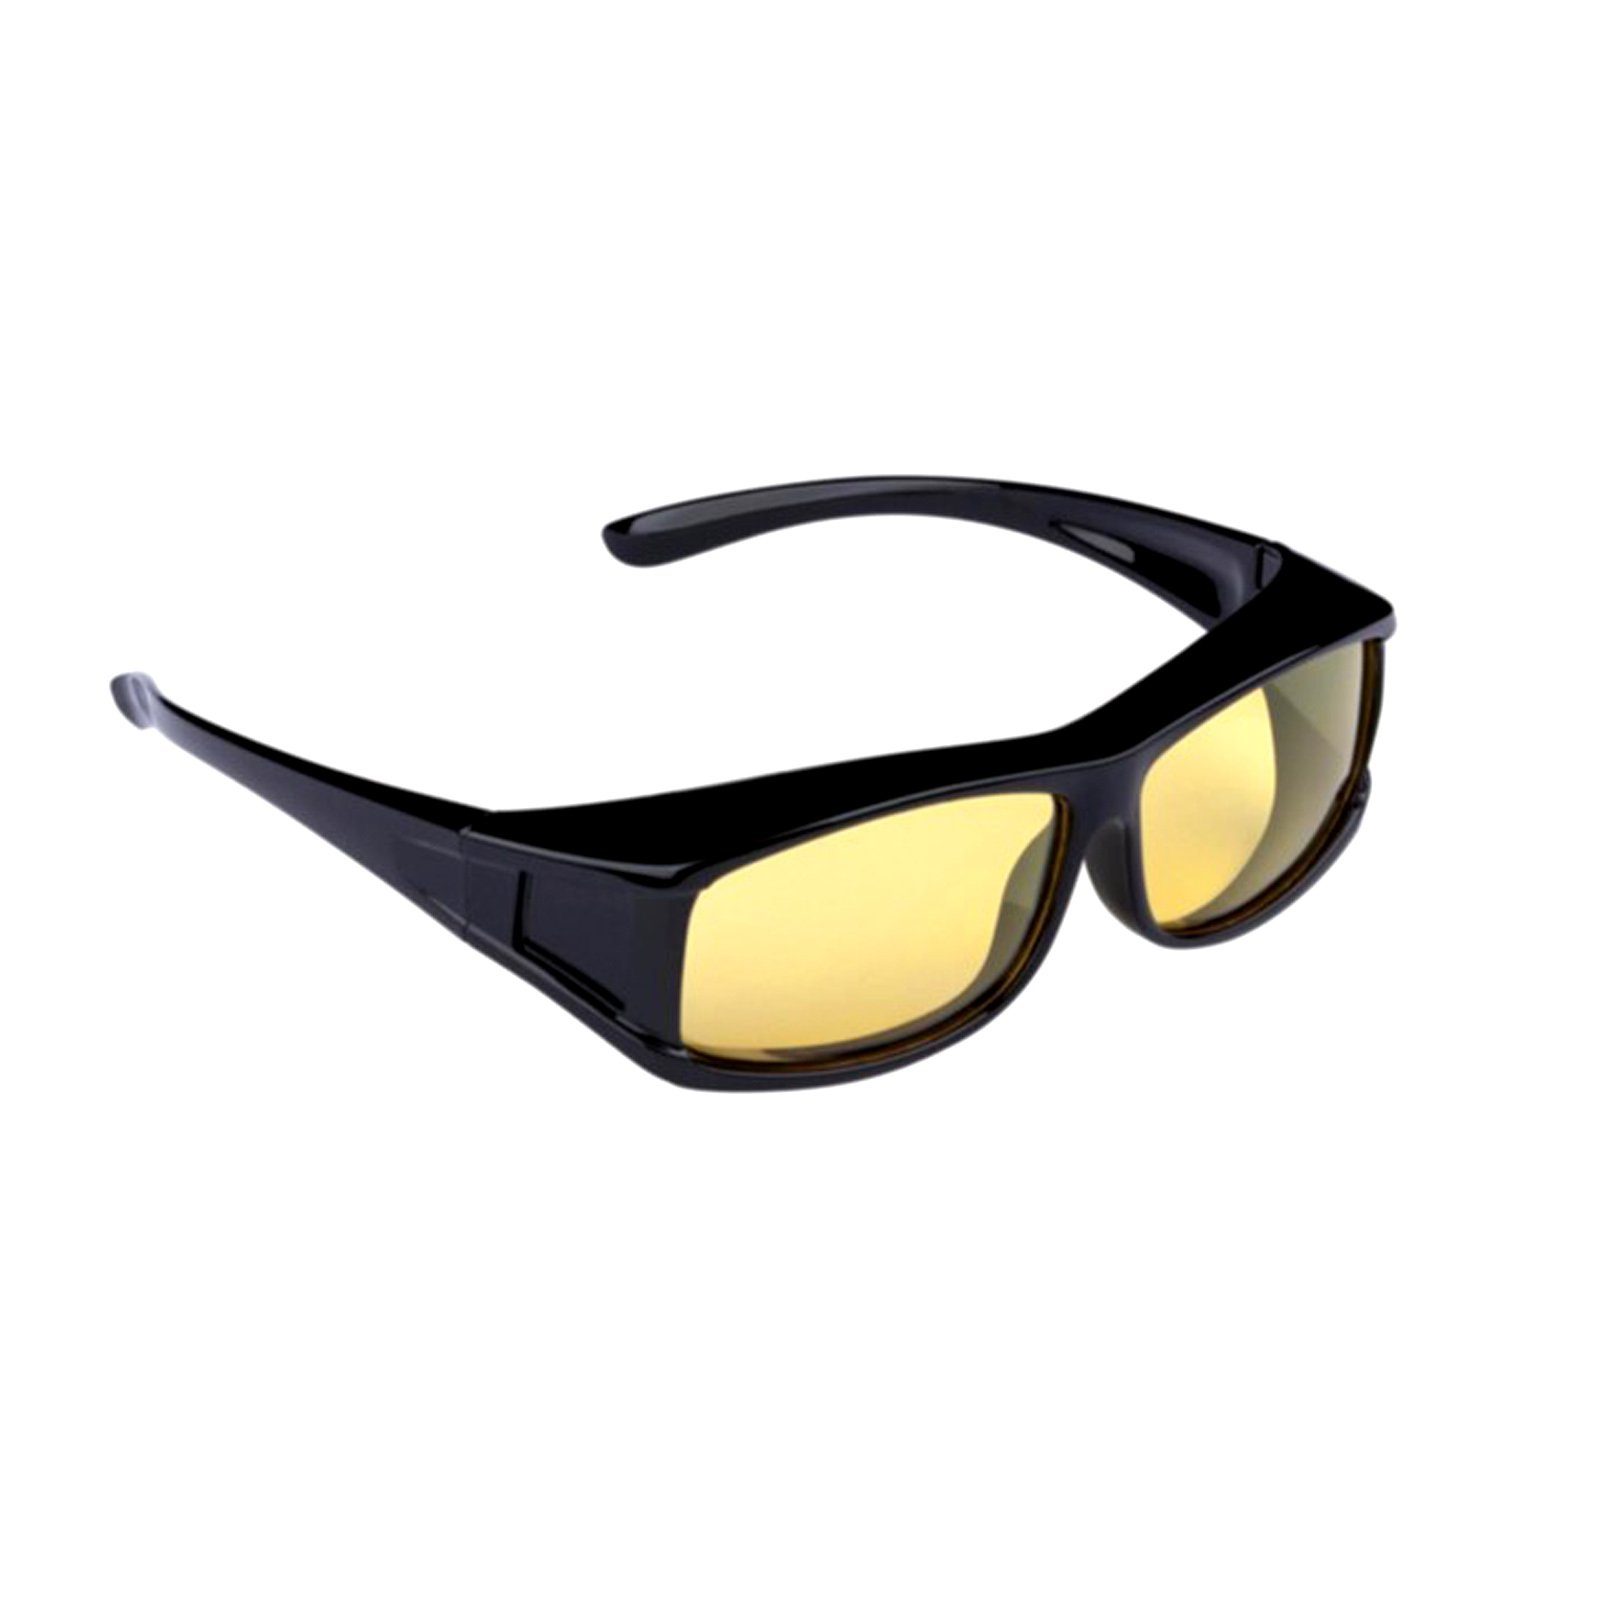 Kontrastbrille Polarisiert Auto Nachtfahrbrille Nachtsichtbrille (1-St) Überziehbrille HAC24 Sonnenbrille